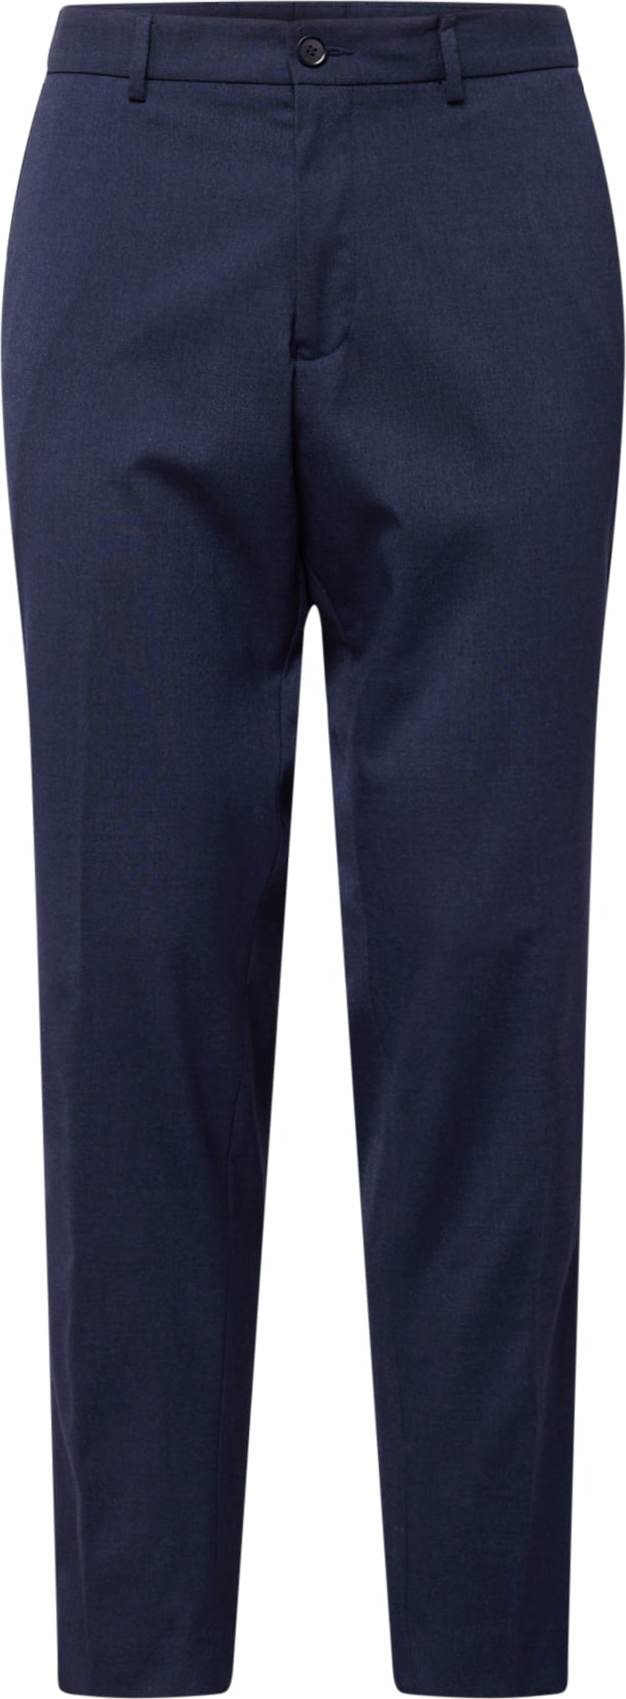 Kalhoty s puky s.Oliver námořnická modř